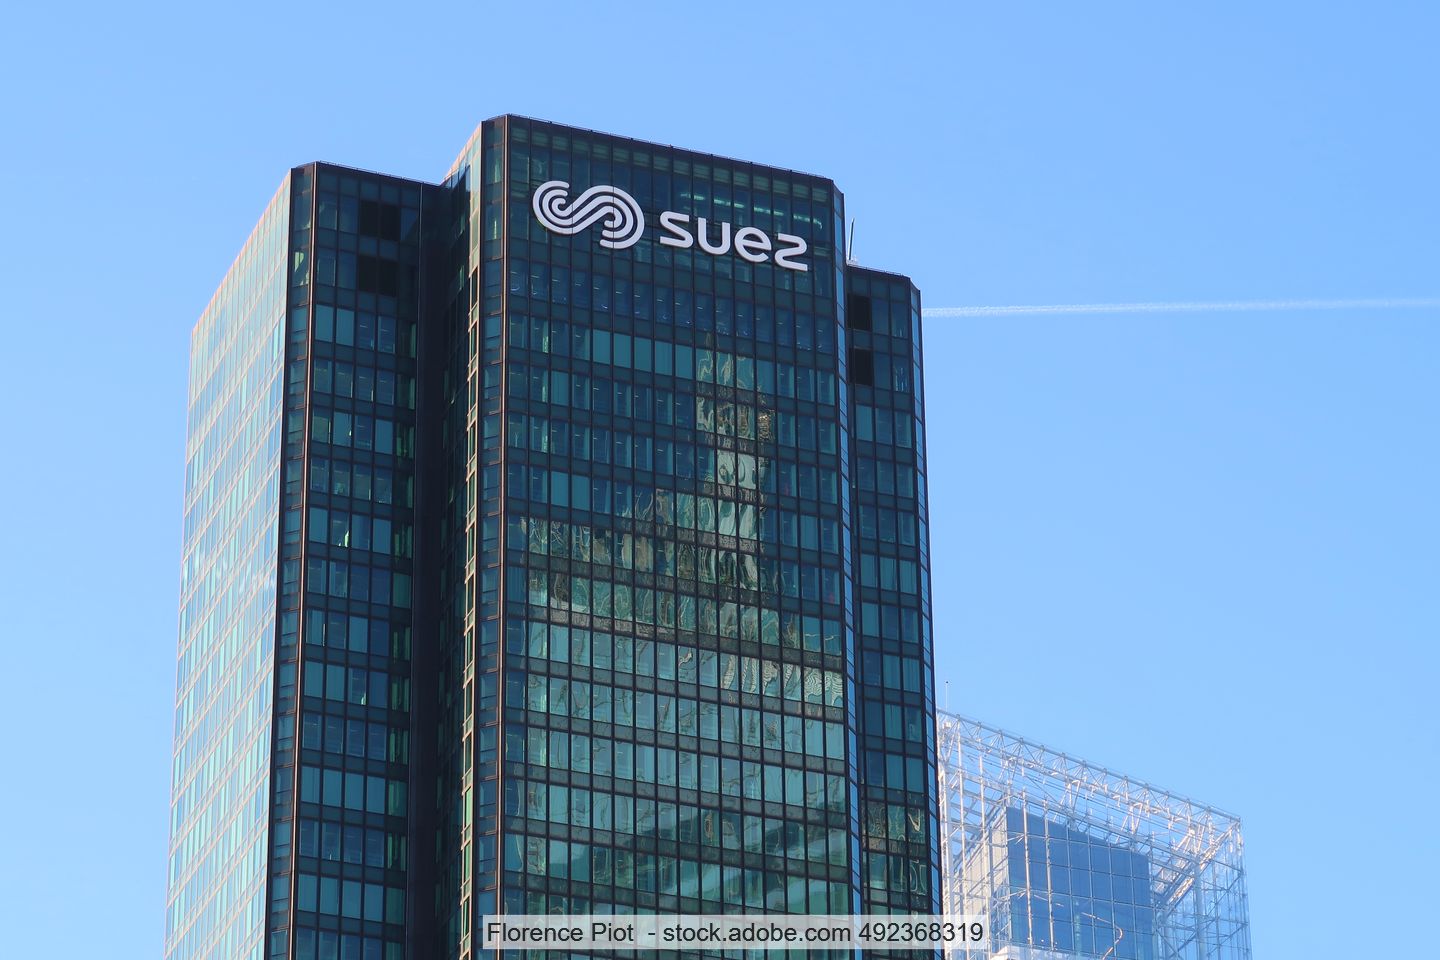 View of the Suez headquarters building in the Paris district of La Défense